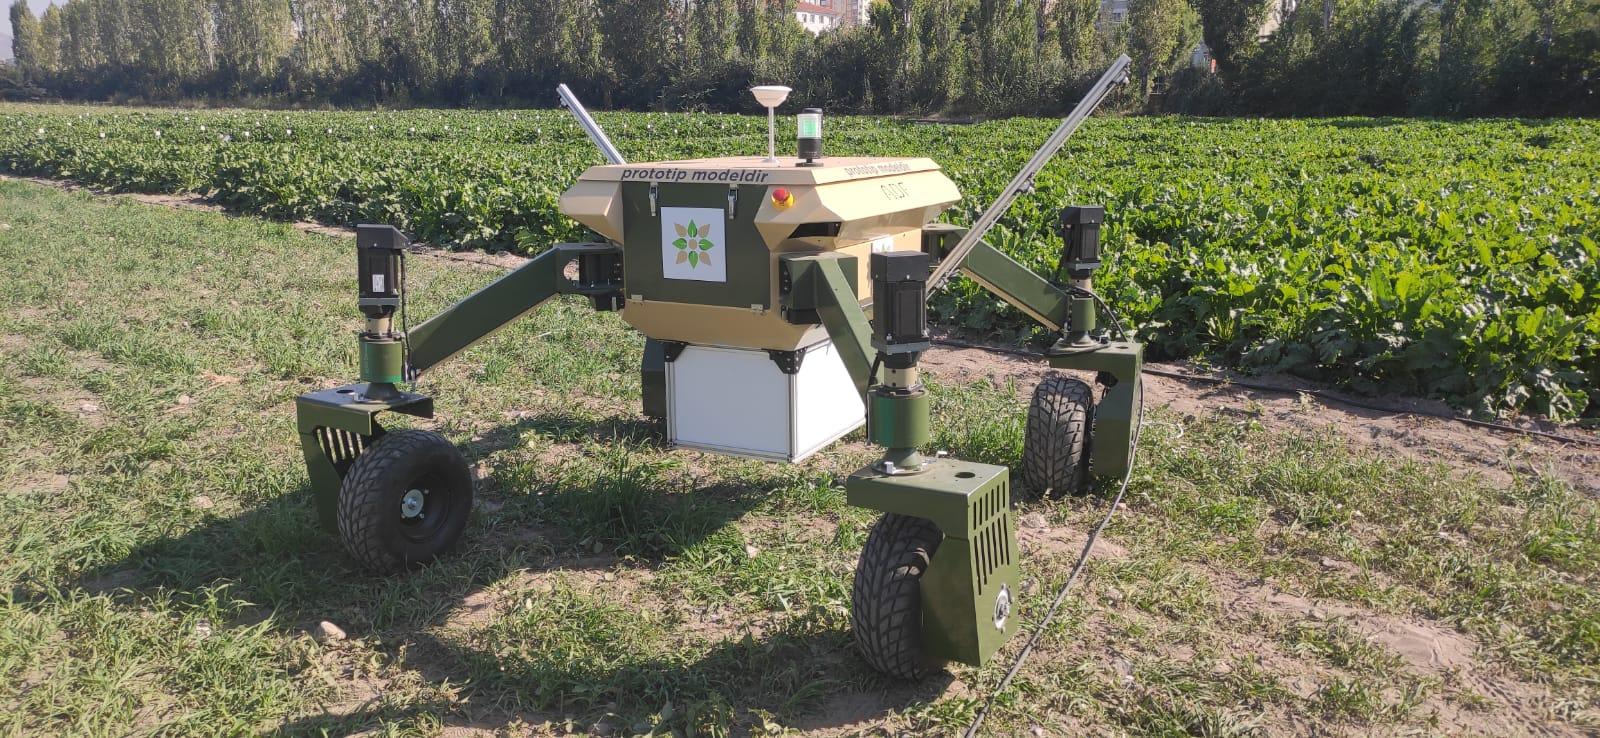 Autonomous Agricultural Robot